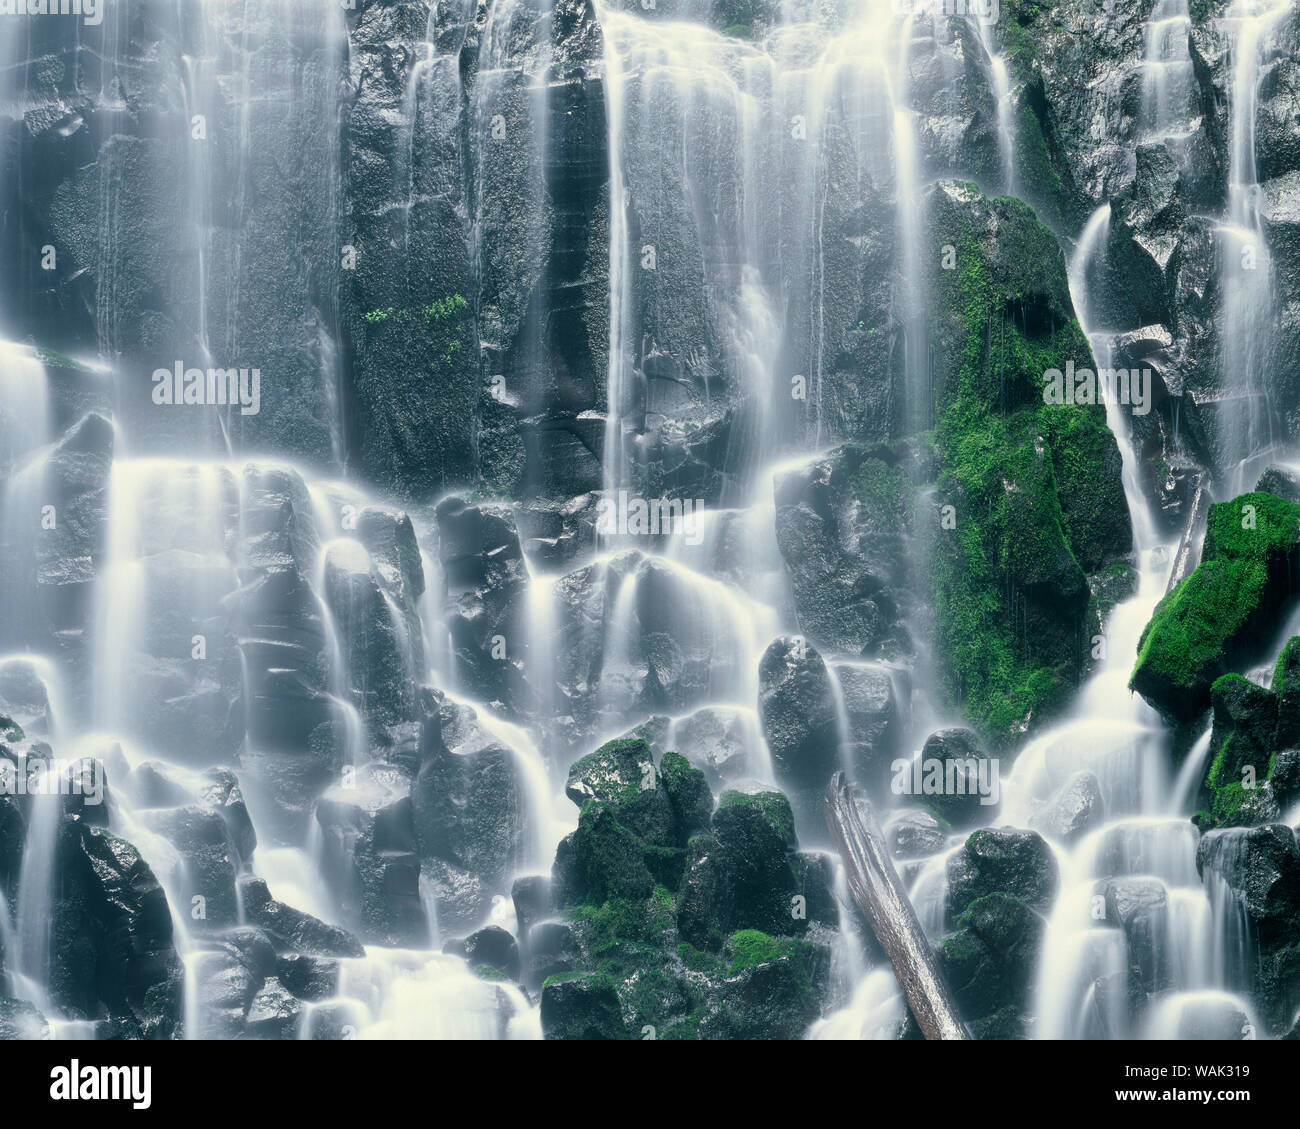 USA (Oregon), Mount Hood National Forest. Mount Hood Wilderness, Ramona Falls est formé par un petit ruisseau Tumbling sur une falaise de basalte columnaire moussus. Banque D'Images